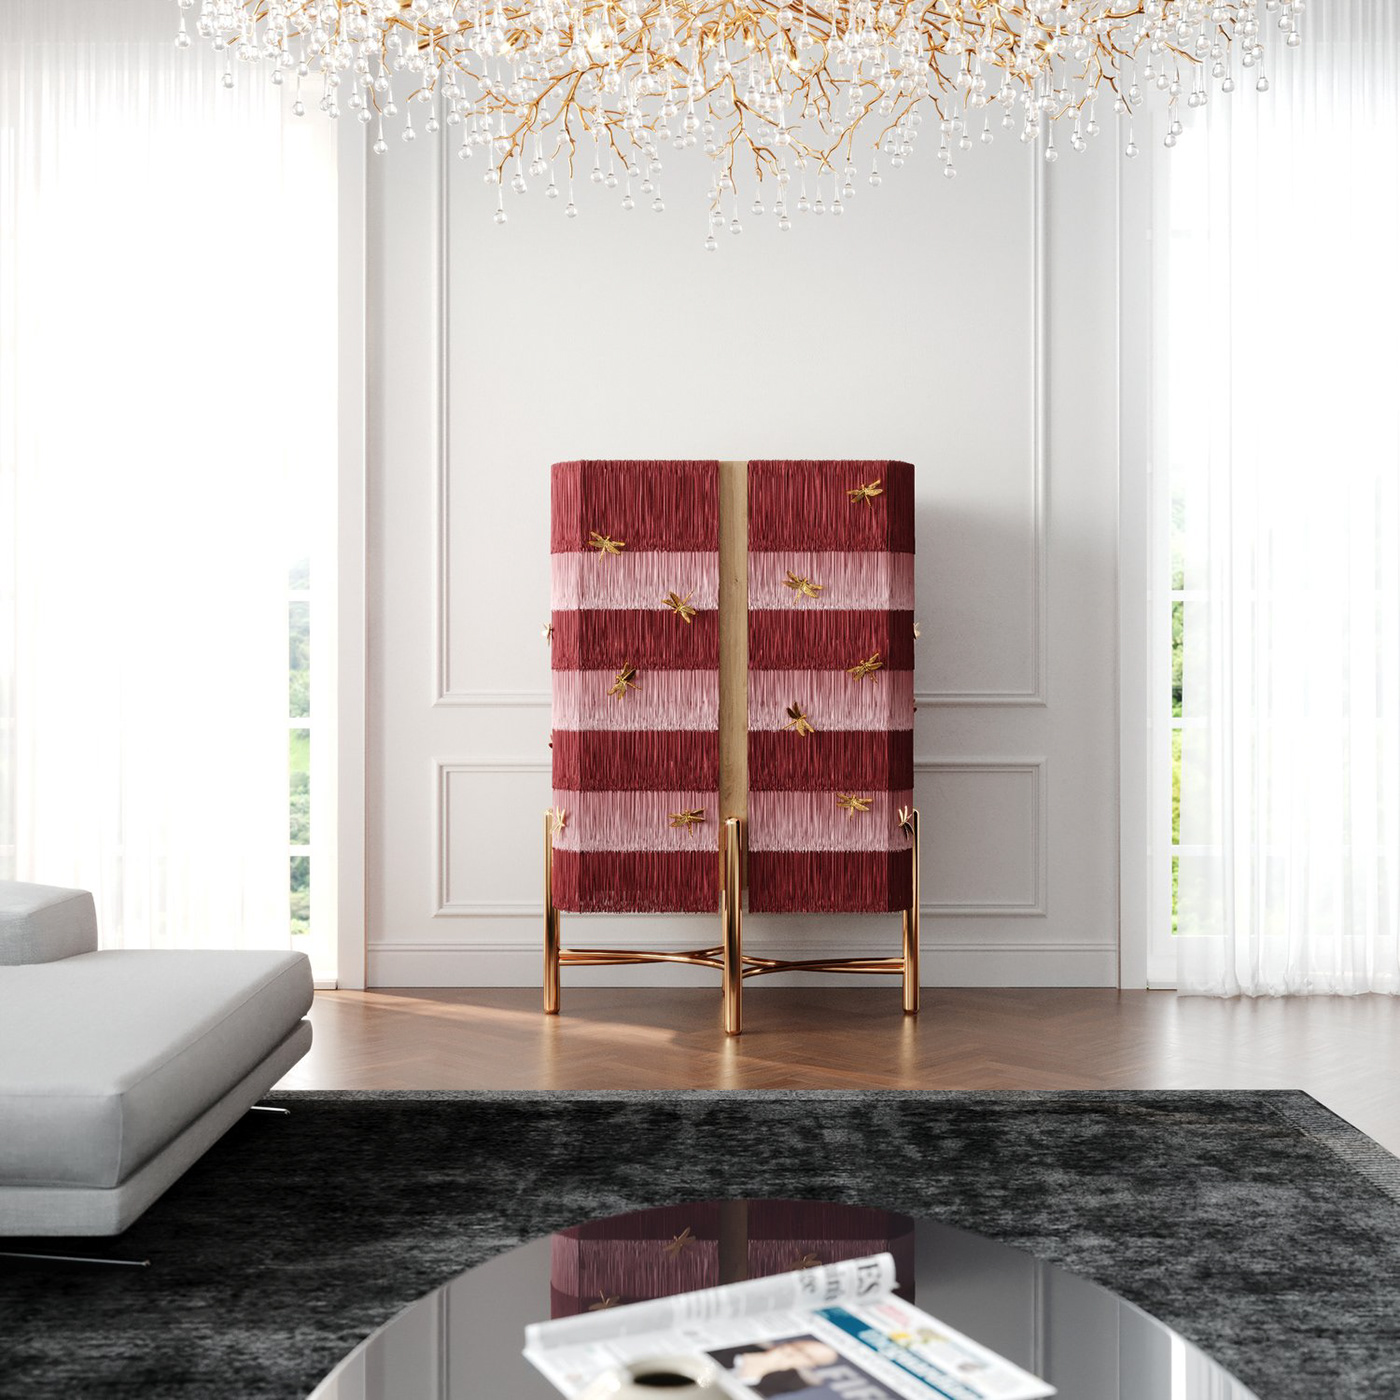 barcabinet cabinet design Fringe furniture furniture design  Interior interiordesign